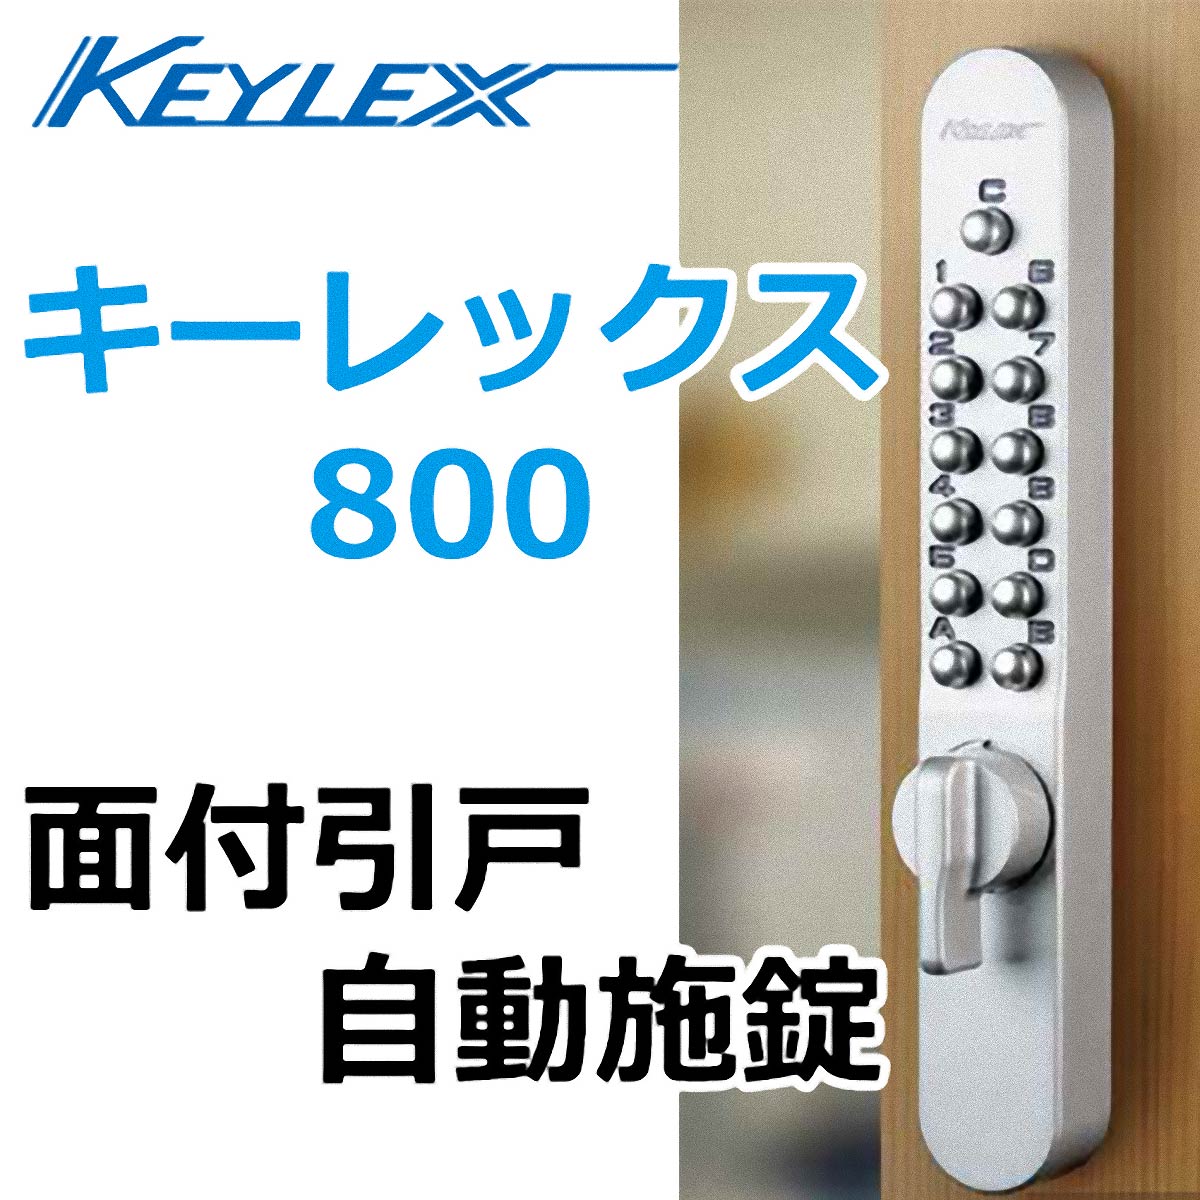 KEYLEX、キーレックス800シリーズ 面付引戸自動施錠